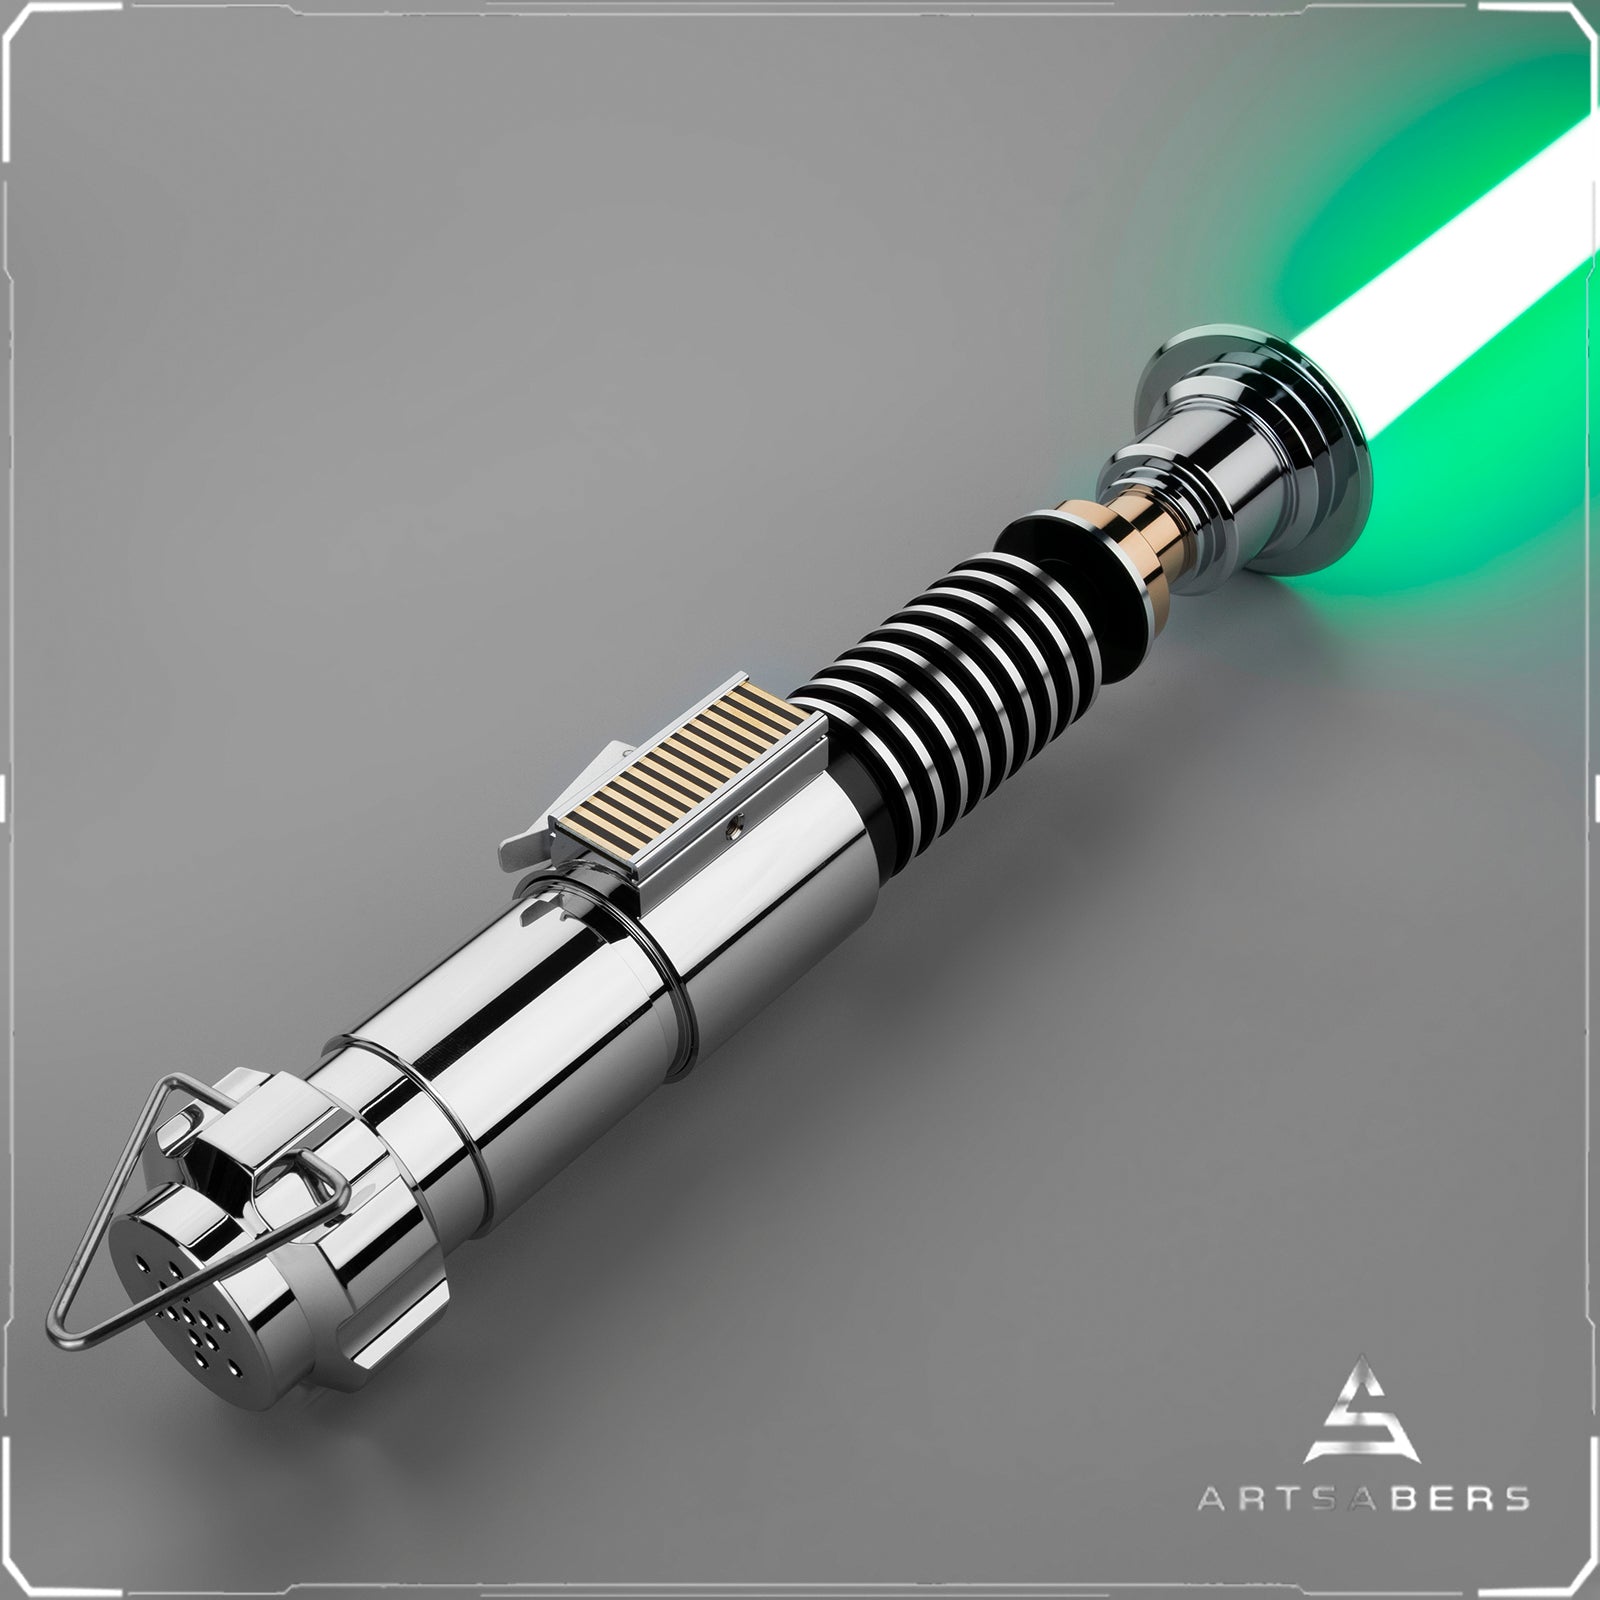 Luke Skywalker Force FX saber Dueling saber